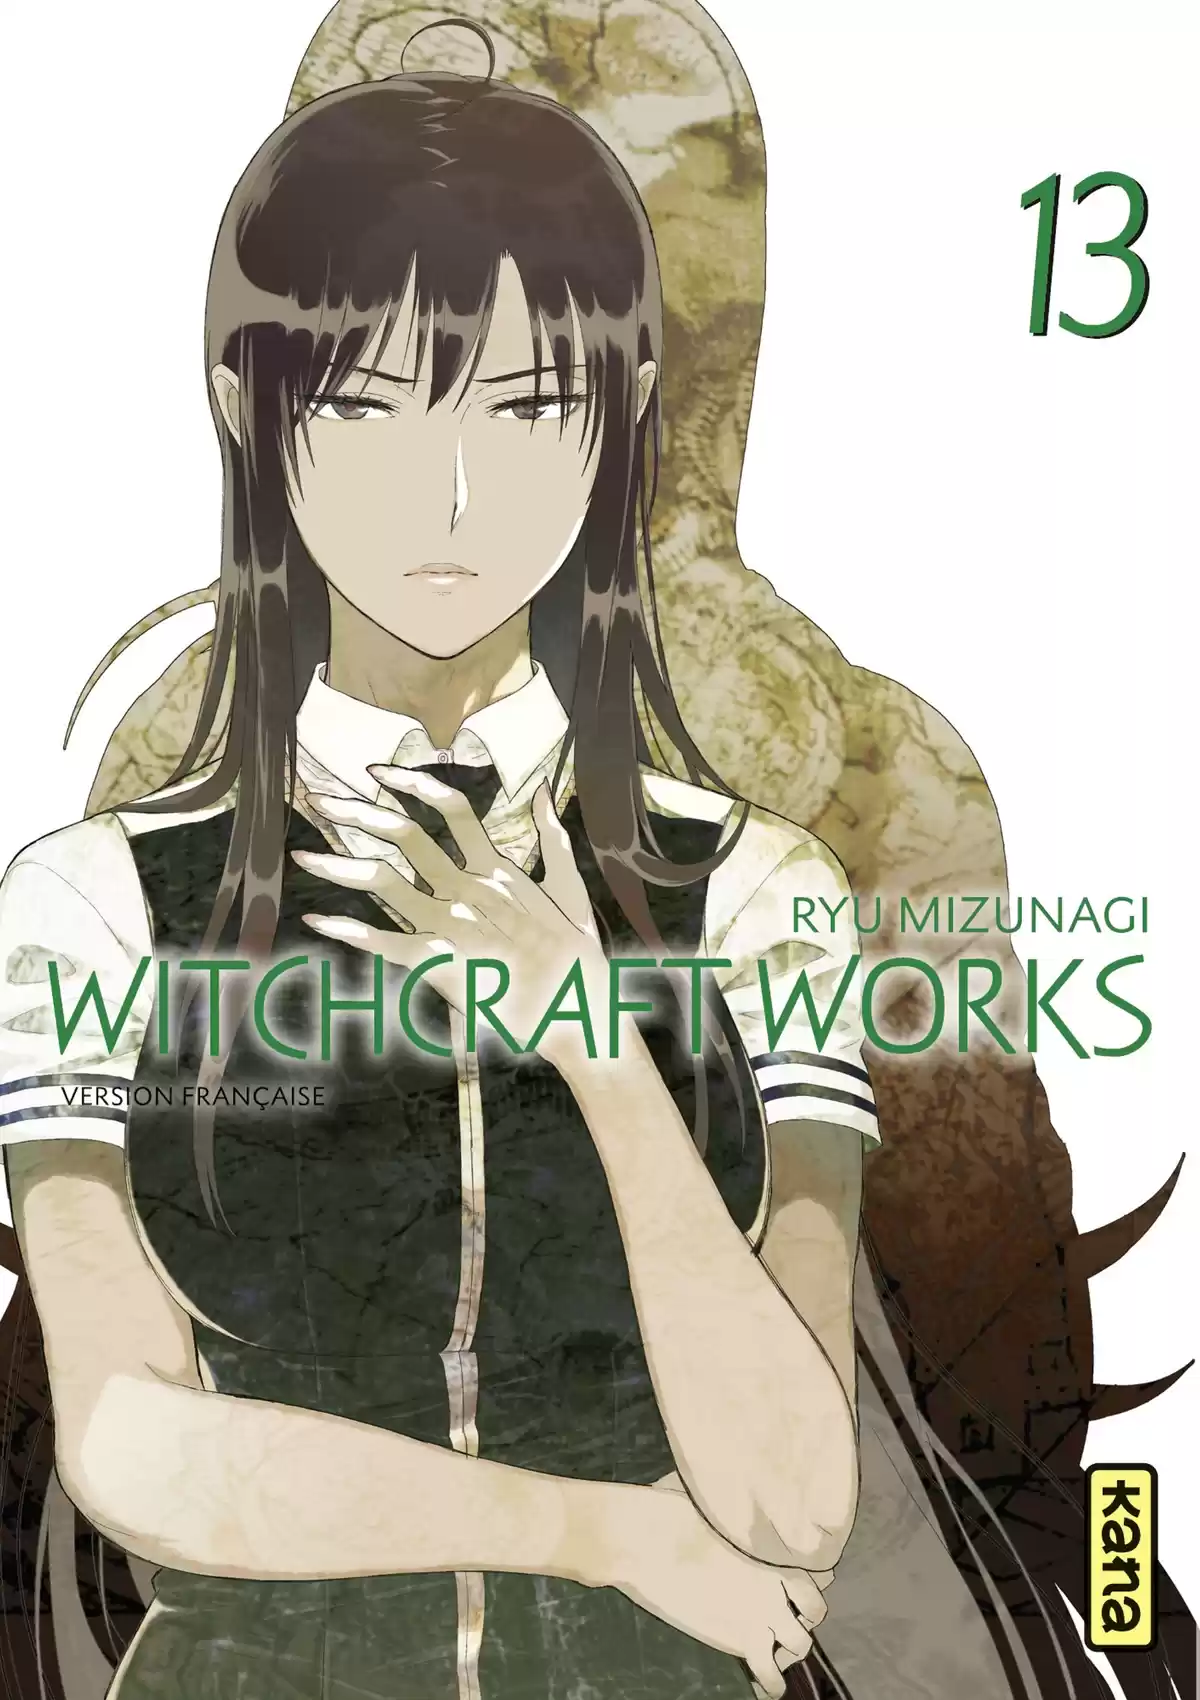 Witchcraft Works Volume 13 page 1